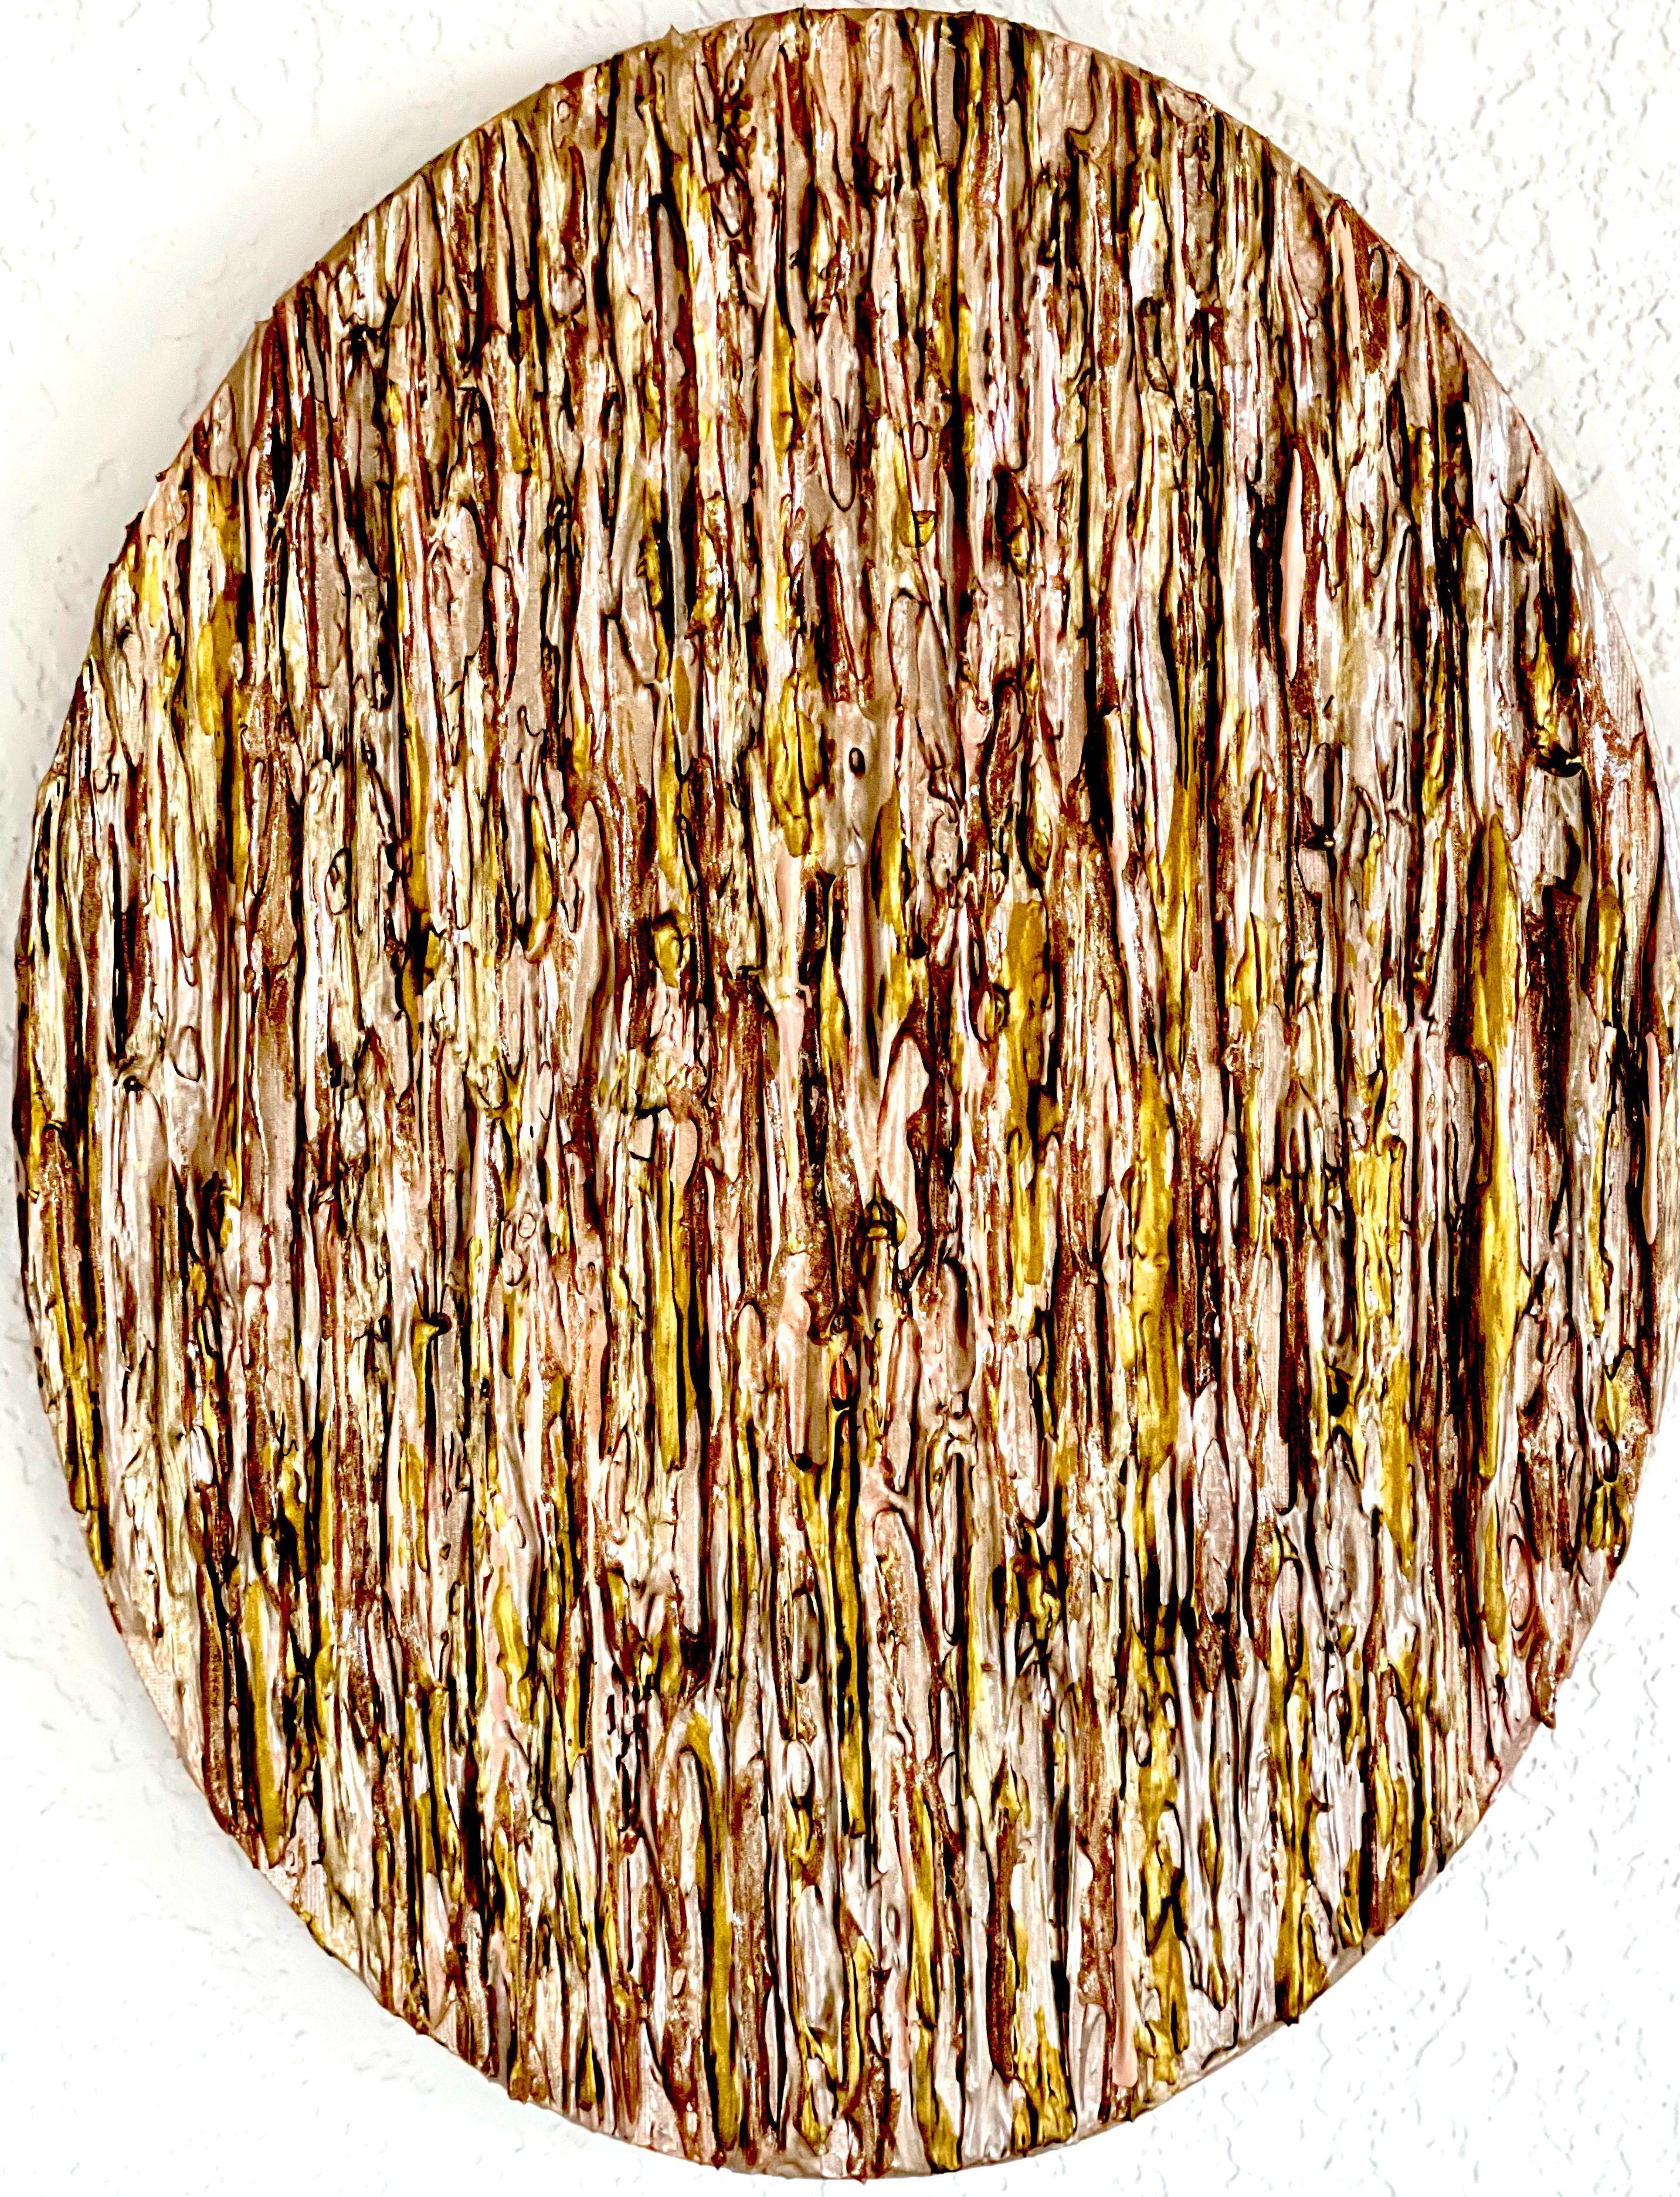 â€œODEâ€ - Composition of 13 Oval Paintings, Mixed Media on Canvas - Contemporary Mixed Media Art by Daniela Pasqualini